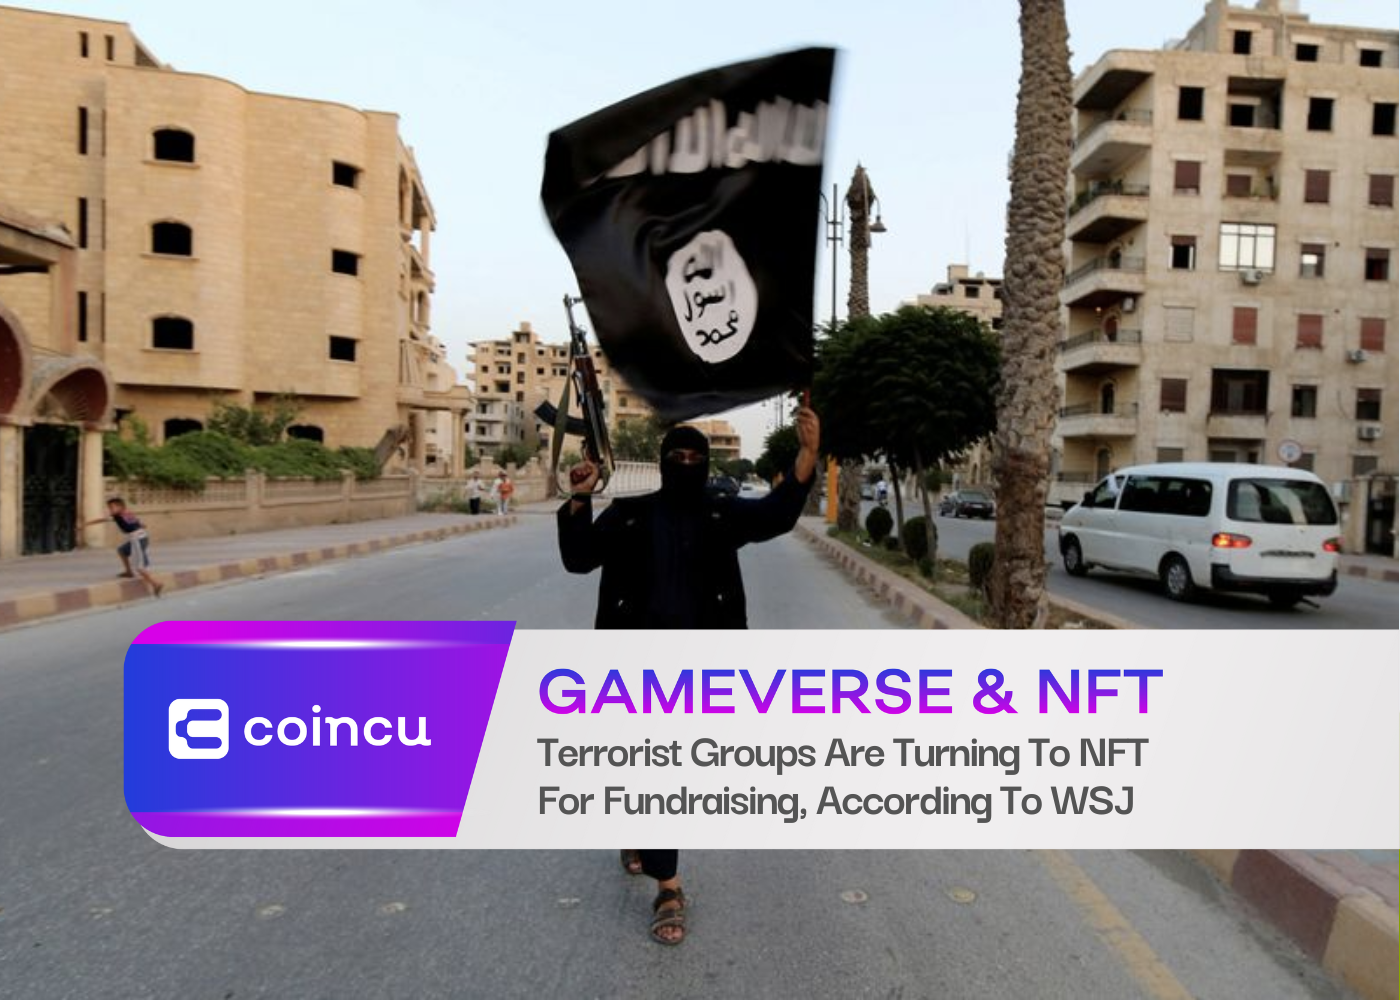 WSJ'ye Göre Terörist Gruplar Kaynak Toplama İçin NFT'ye Başvuruyor